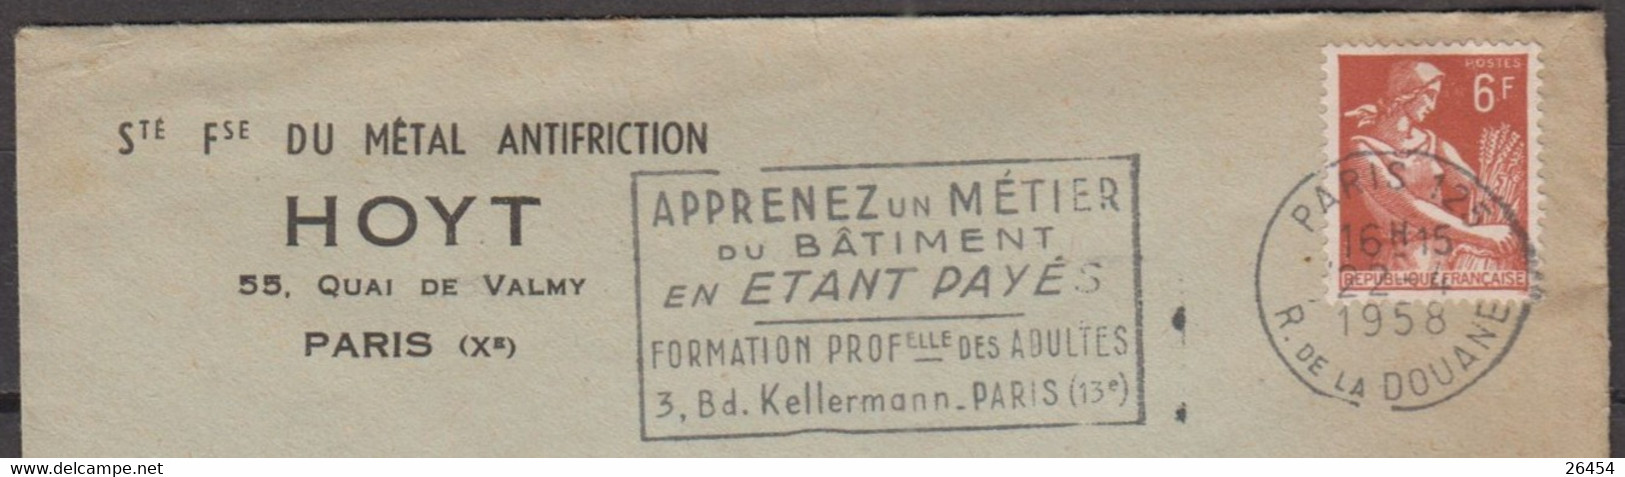 Moissonneuse  6F Sur Enveloppe Pub " Sté Fse Du METAL ANTIFRICTION " De PARIS X Le 22 4 1958 Avec Sécap De PARIS 125 - 1957-1959 Moissonneuse